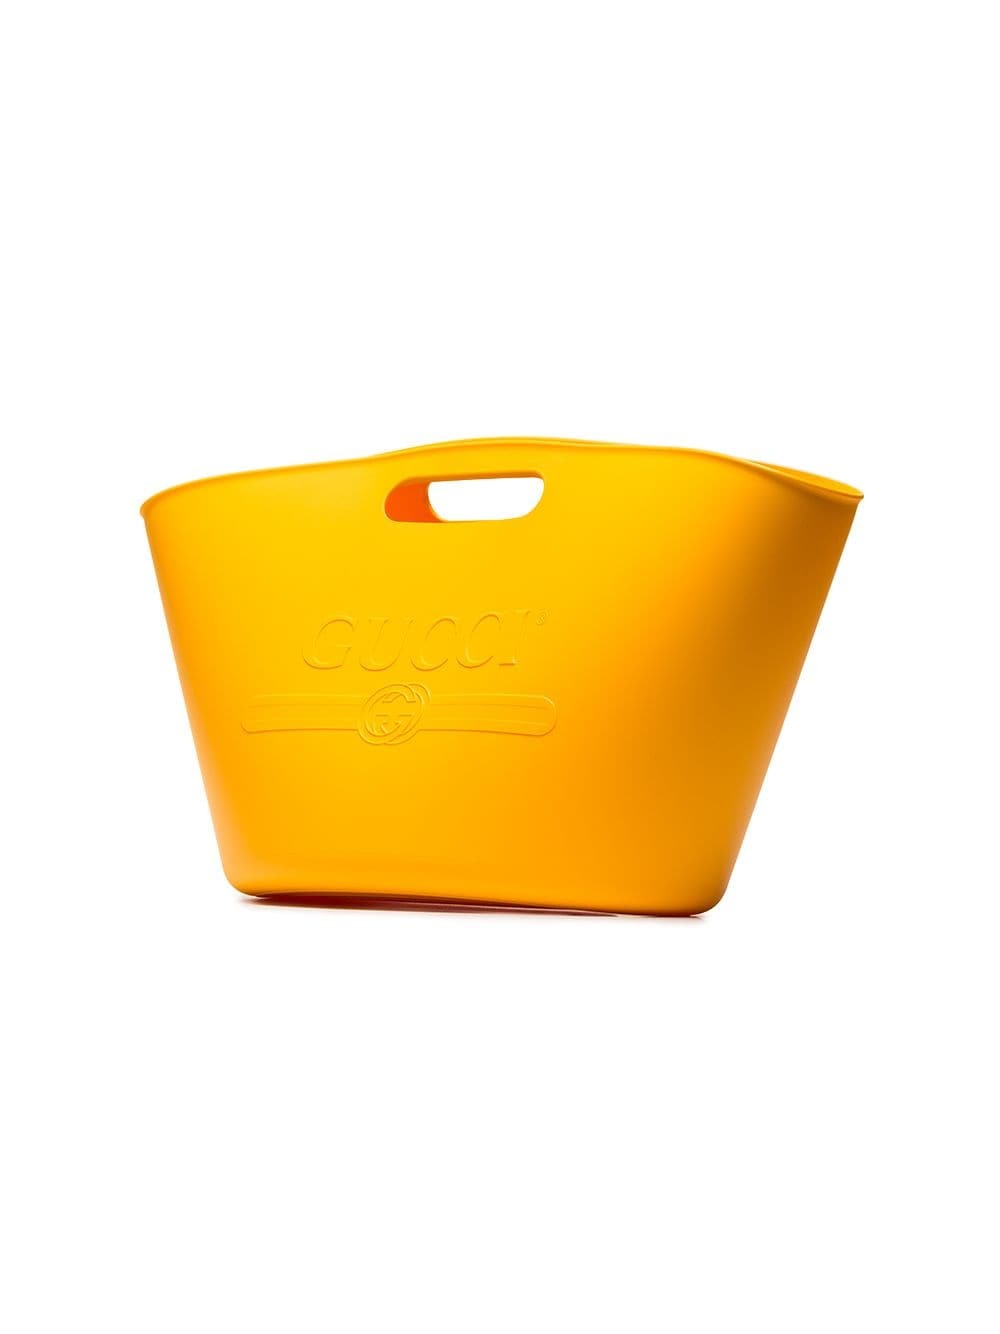 Gucci Yellow Logo Rubber Tote, $980 